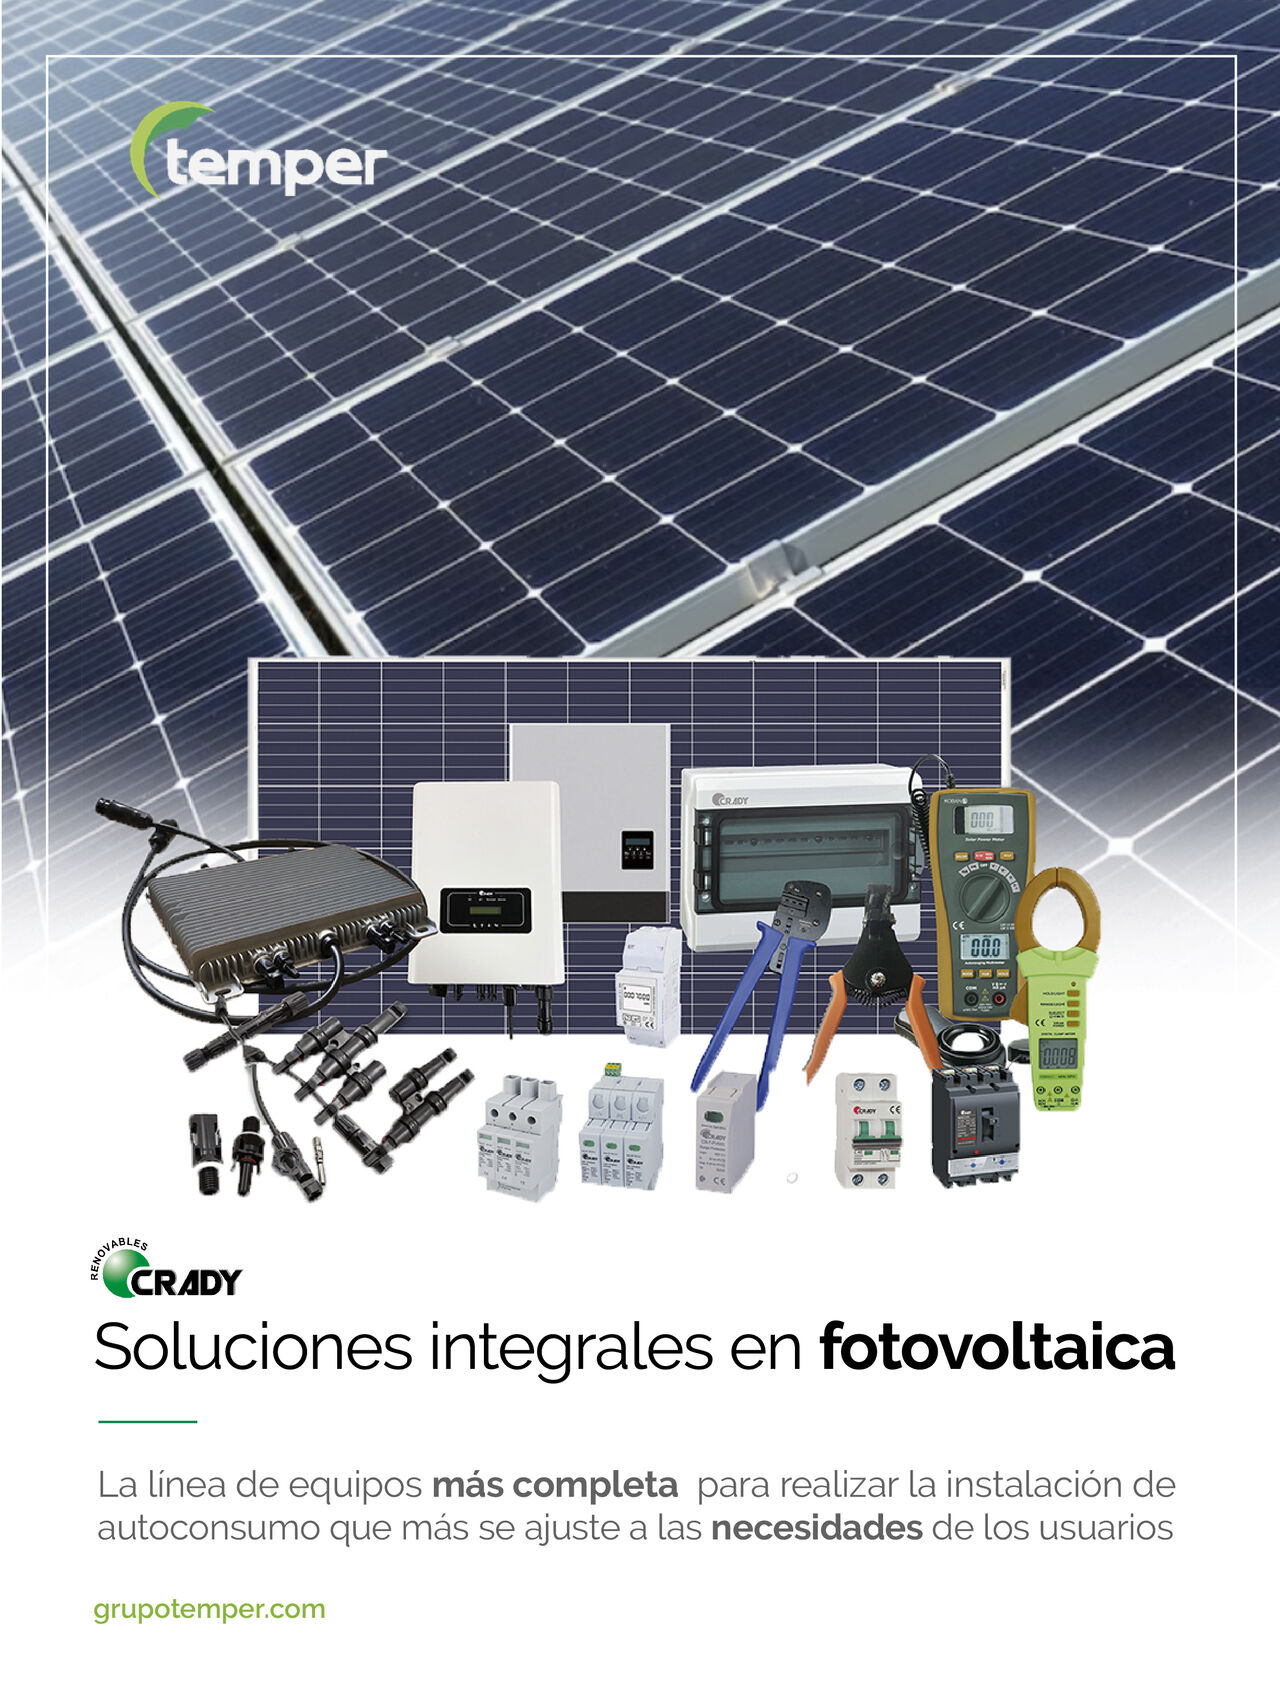 Soluciones Completas para instalaciones de fotovoltaica